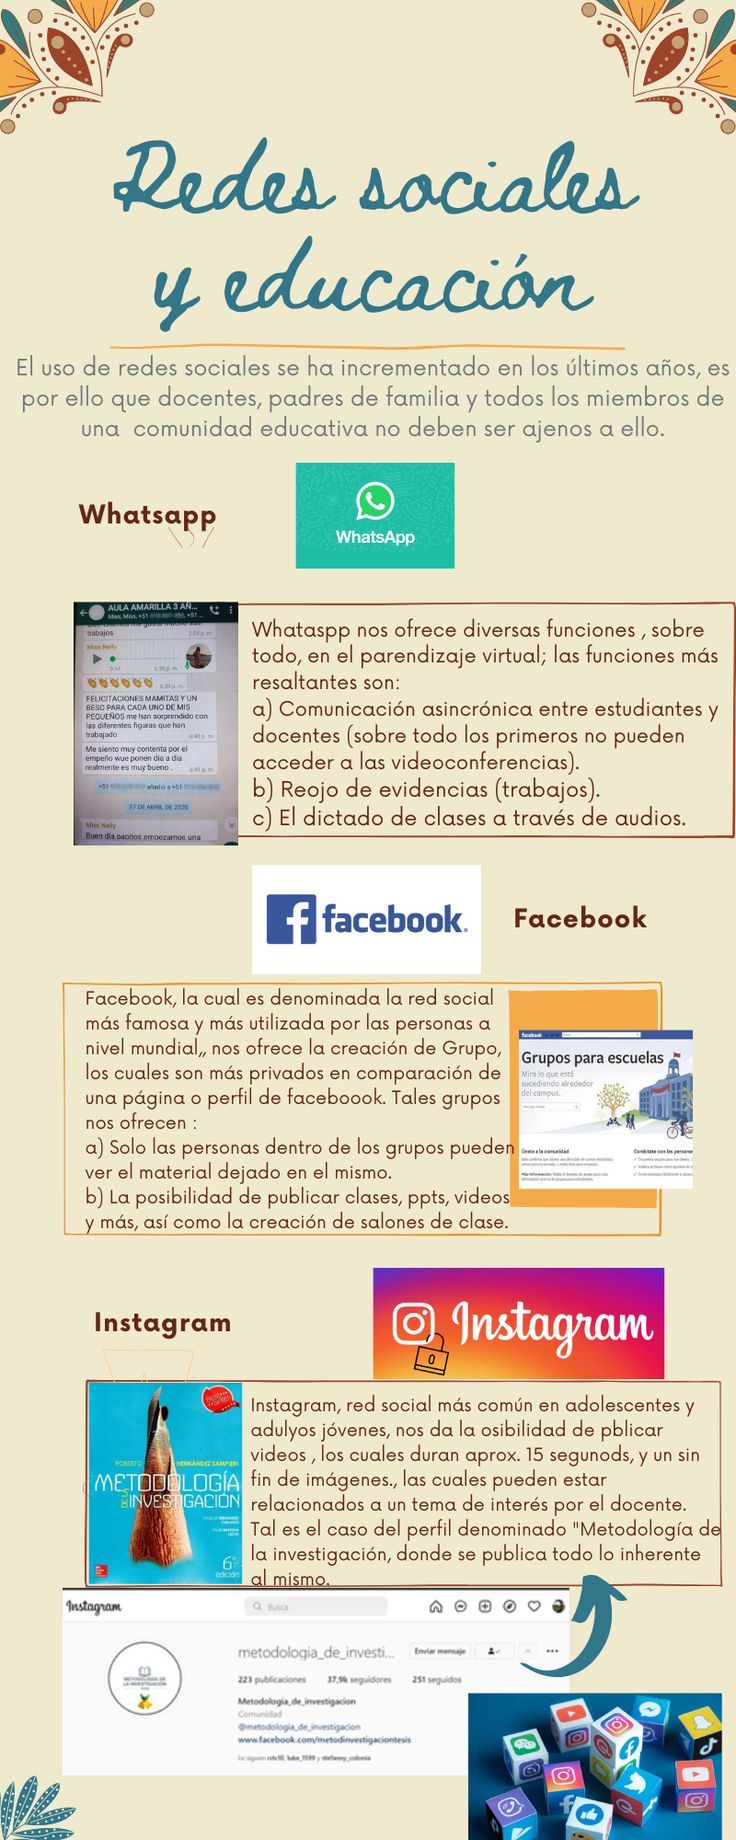 Infografia - Redes sociales y educación